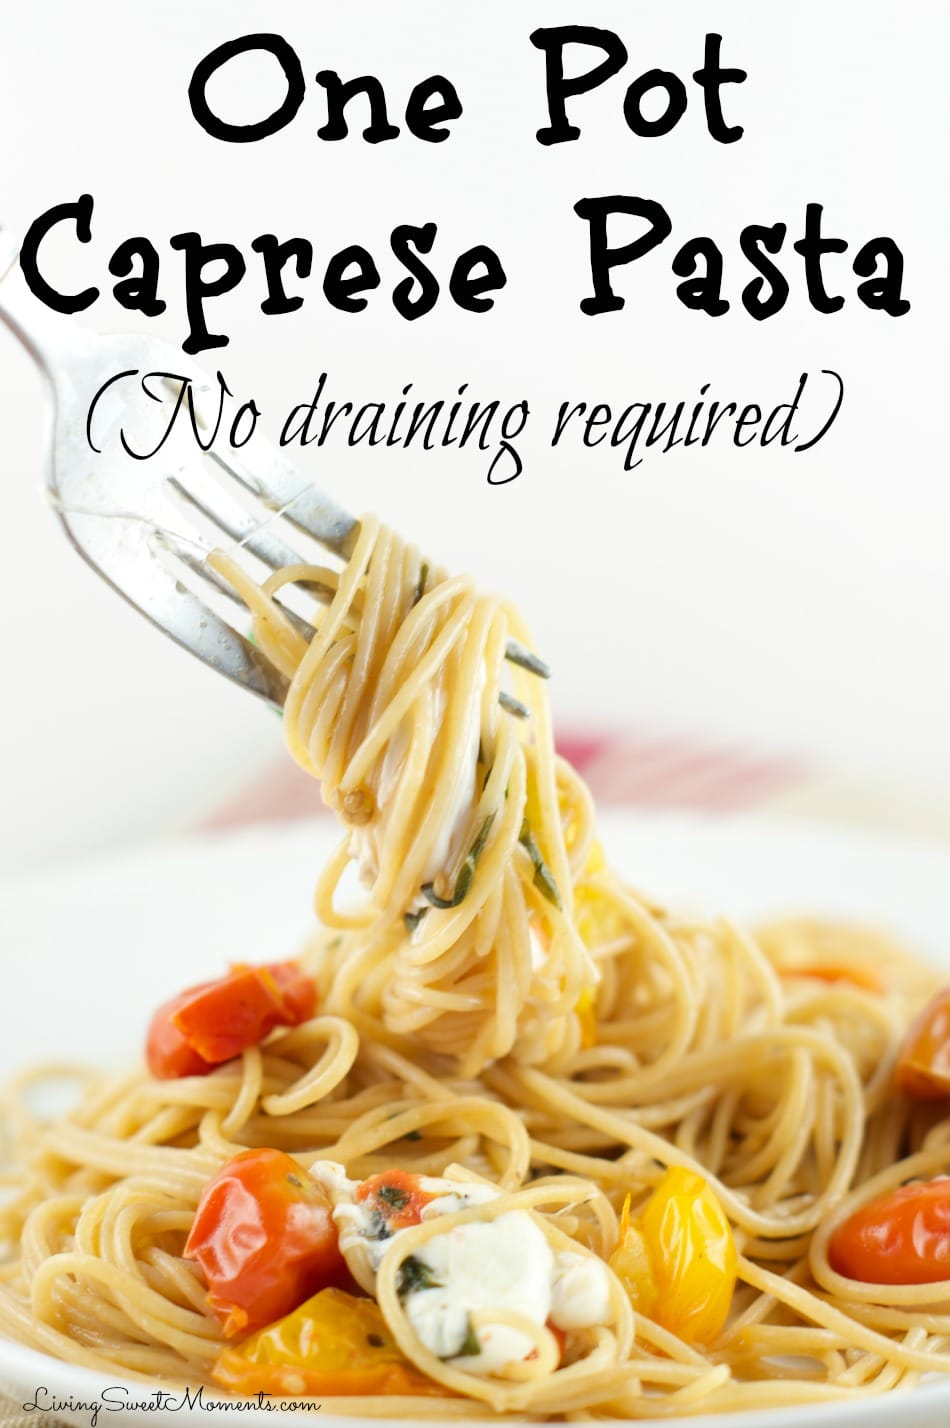 One pot caprese pasta recipe (no draining required!)